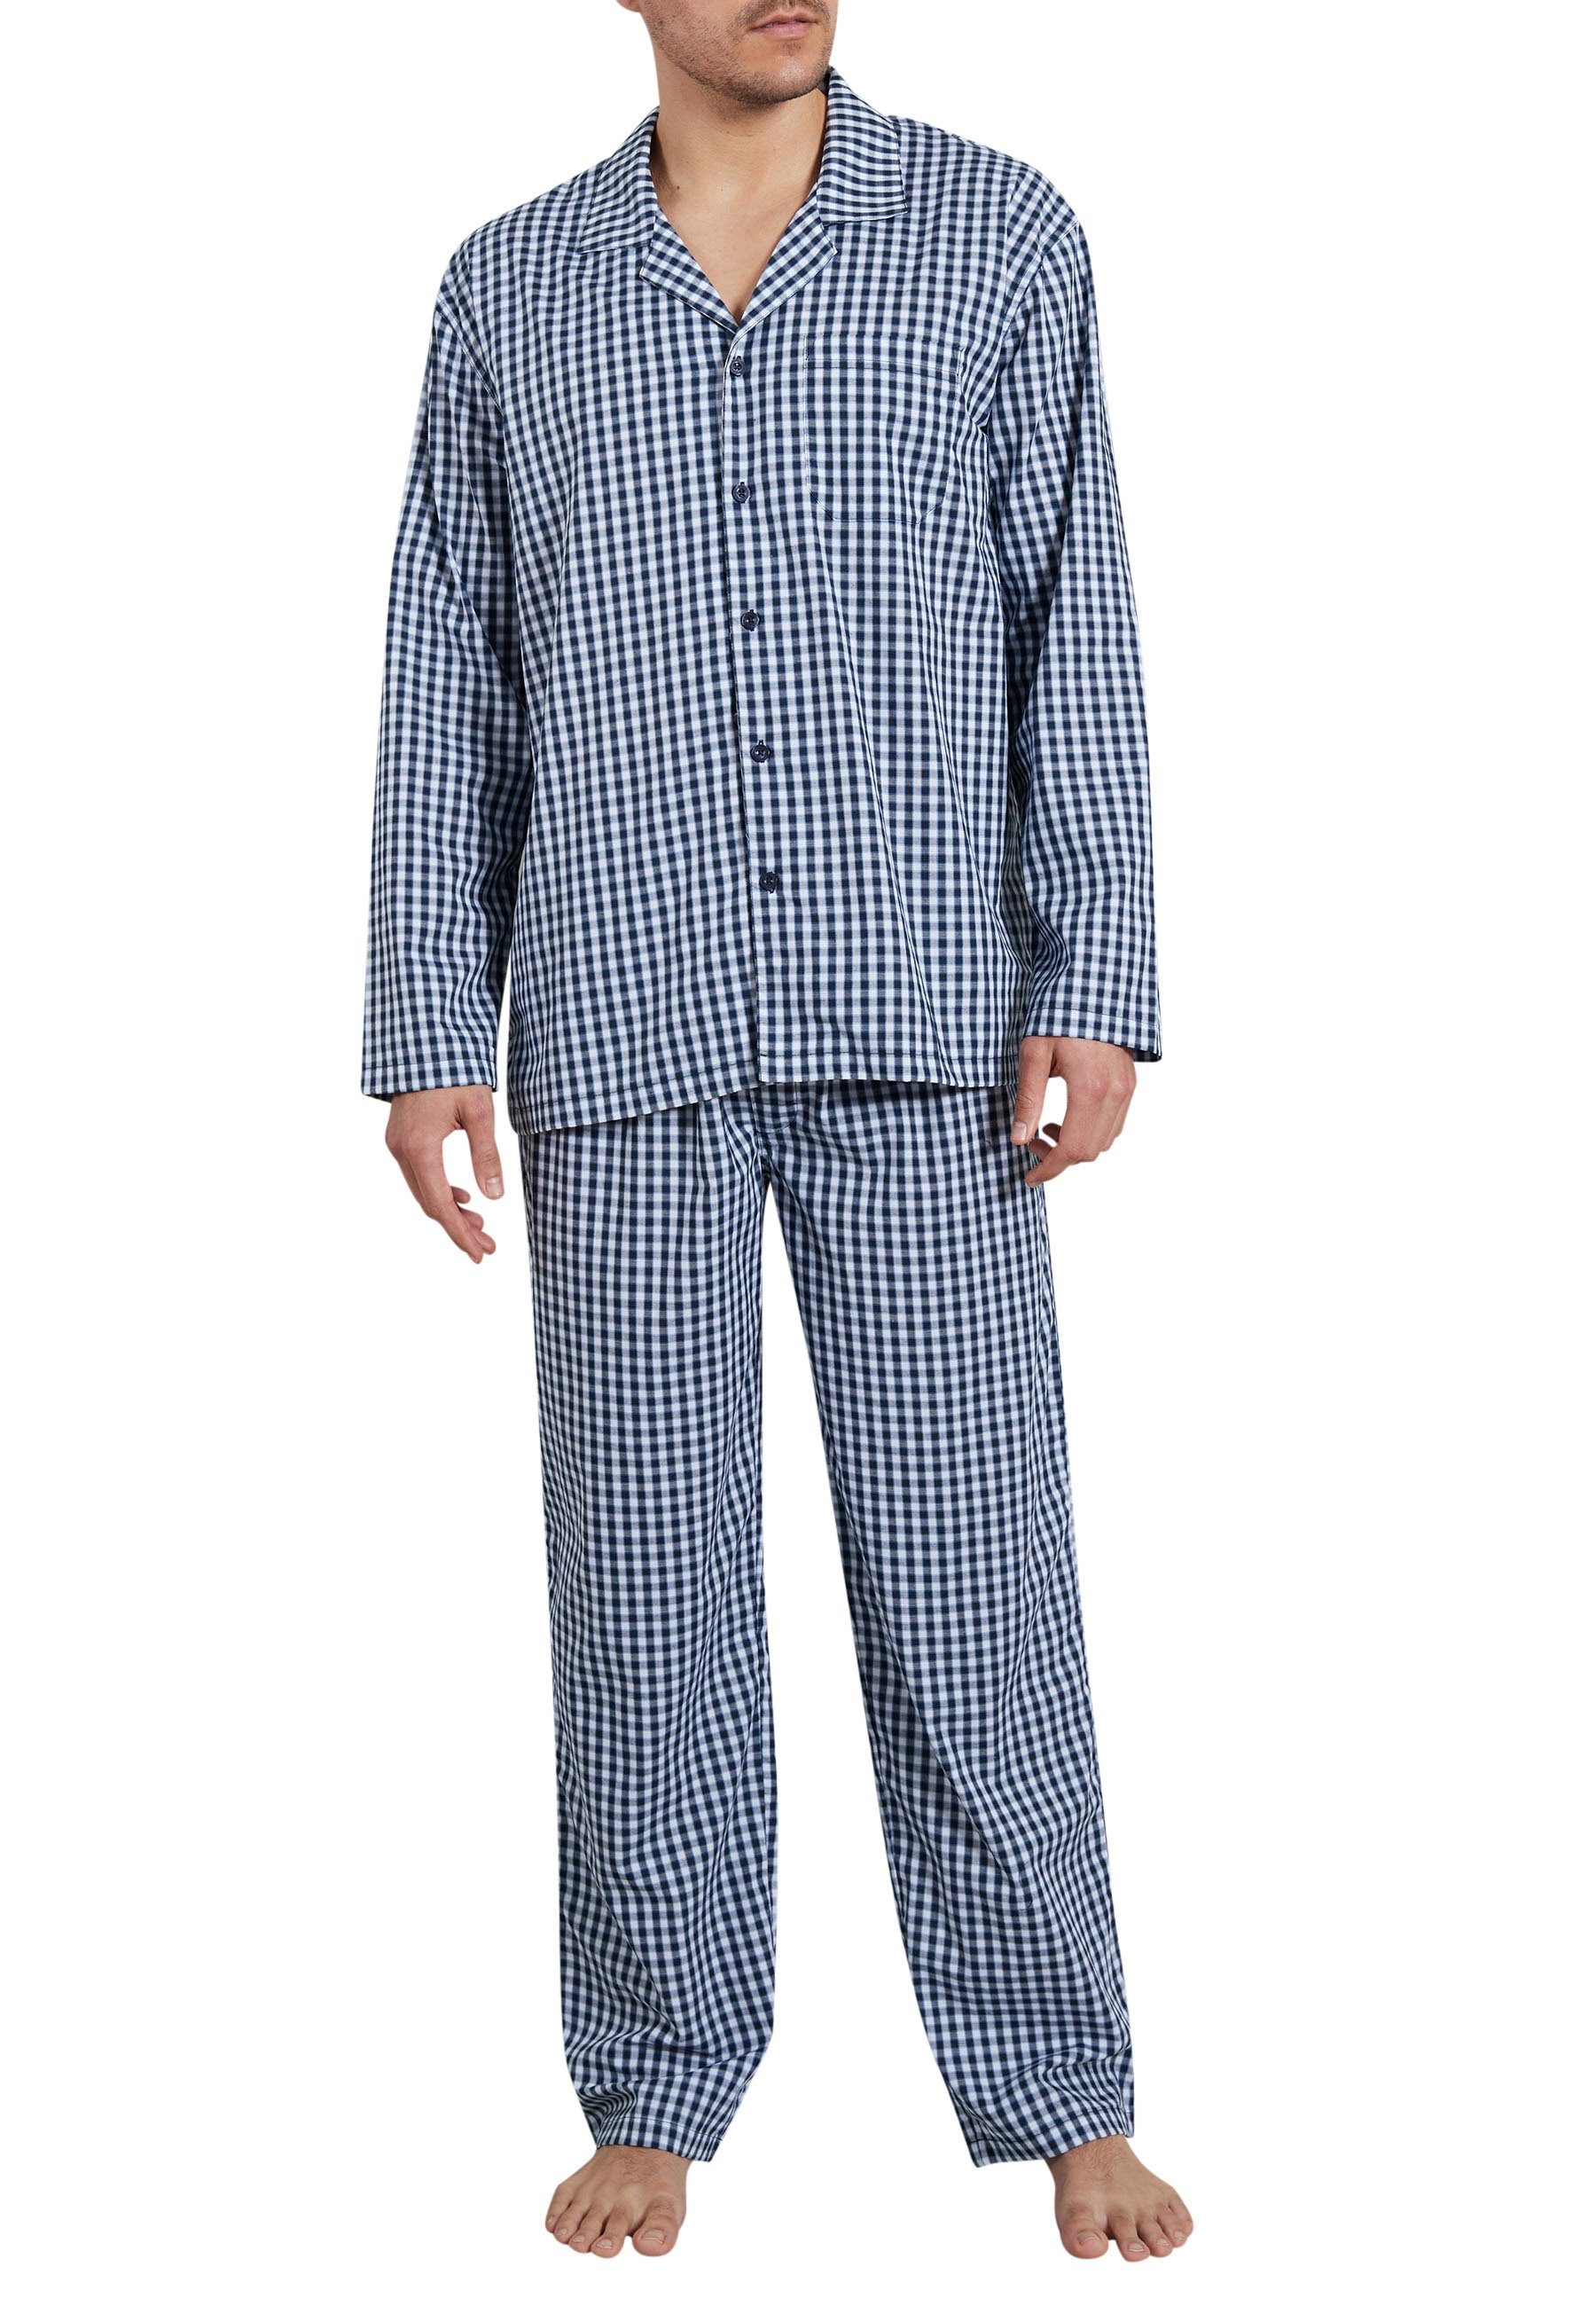 GÖTZBURG blau kariert tlg) Pyjama GÖTZBURG (1 Herren Pyjama